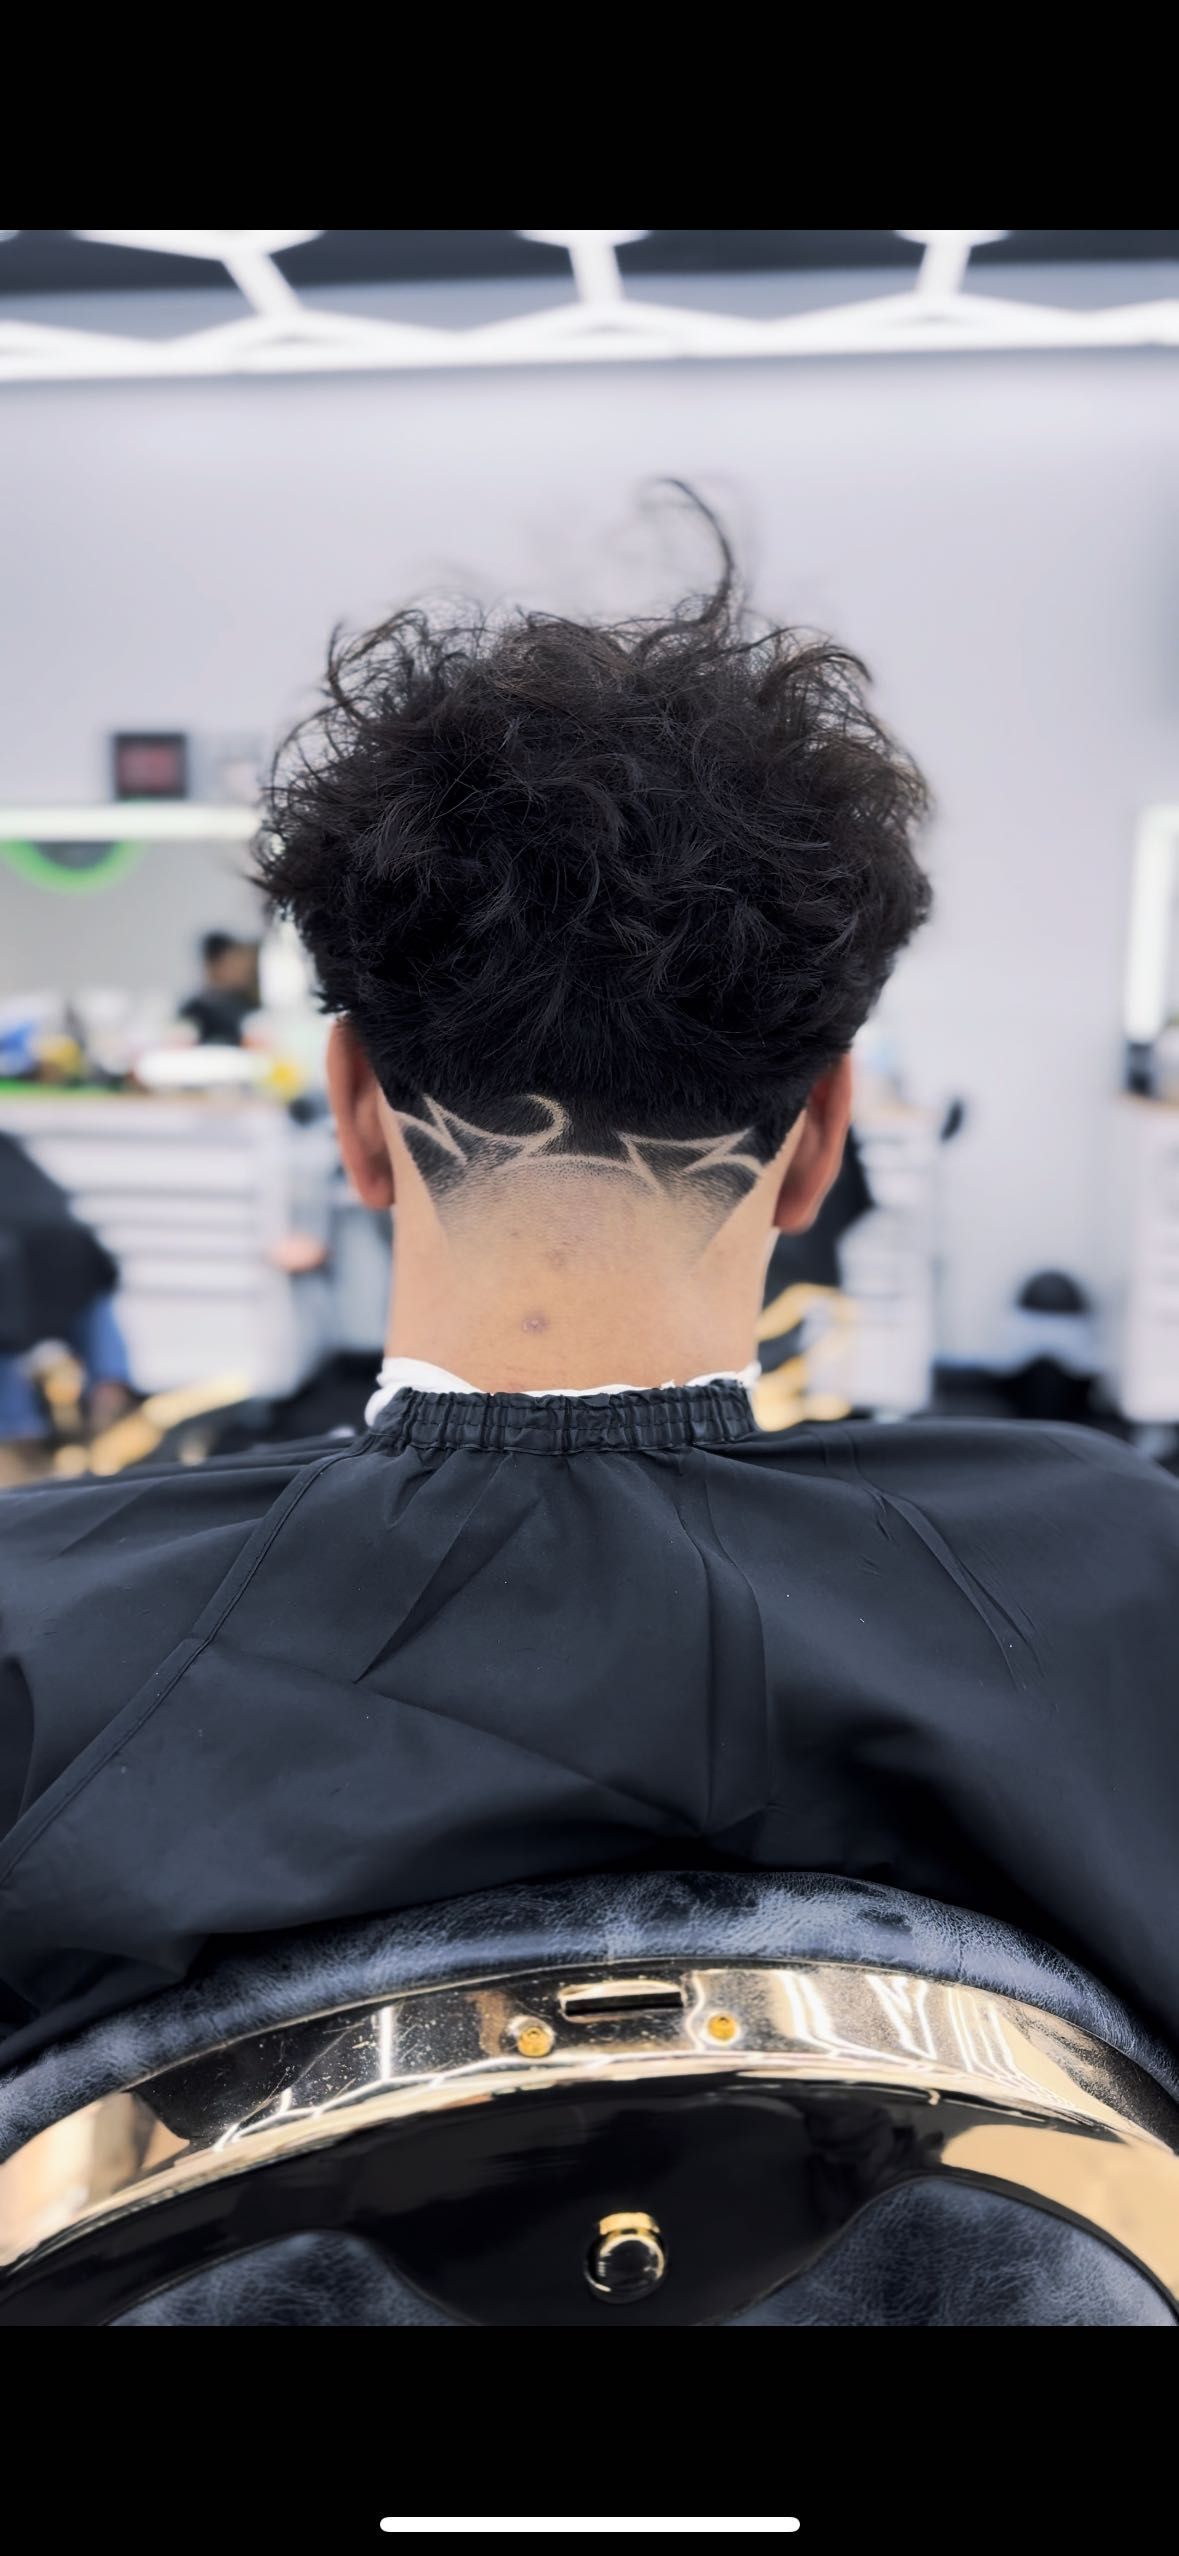 Haircut / Corte de pelo 💈 portfolio